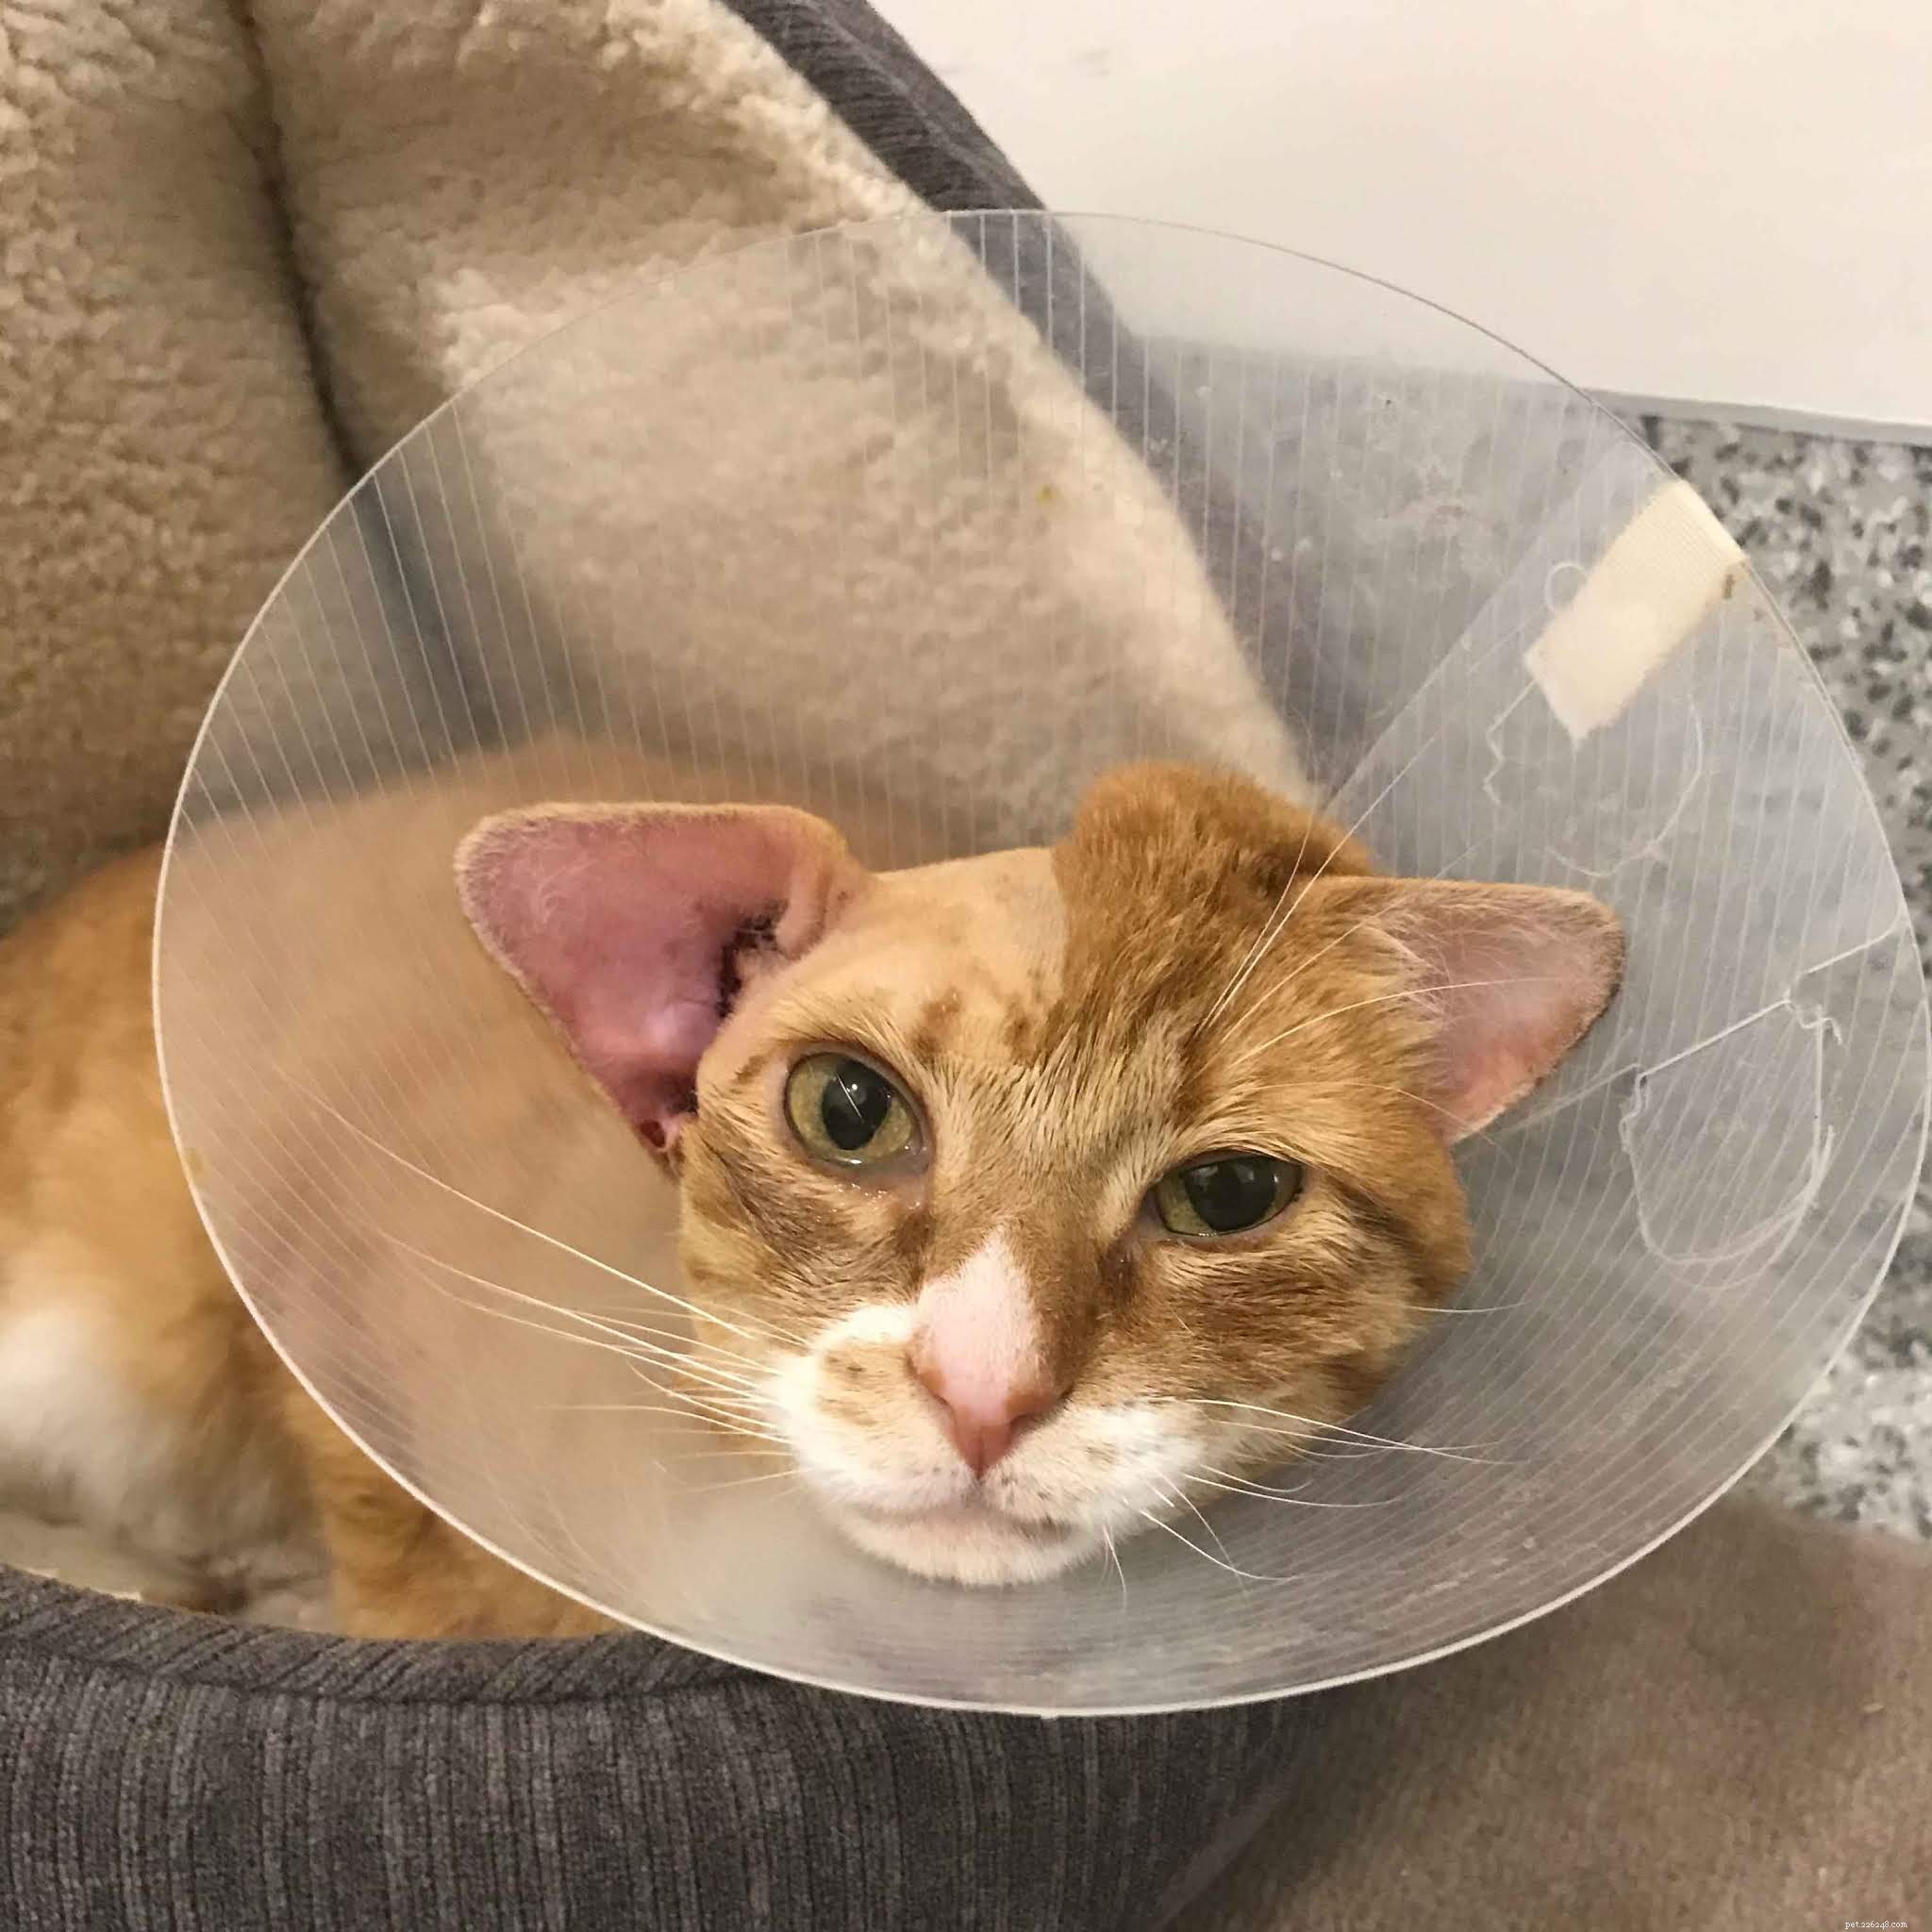 S il vous plaît, aidez-nous à couvrir le coût de la chirurgie tumorale et des soins post-opératoires pour le magnifique chat roux Marshall. 